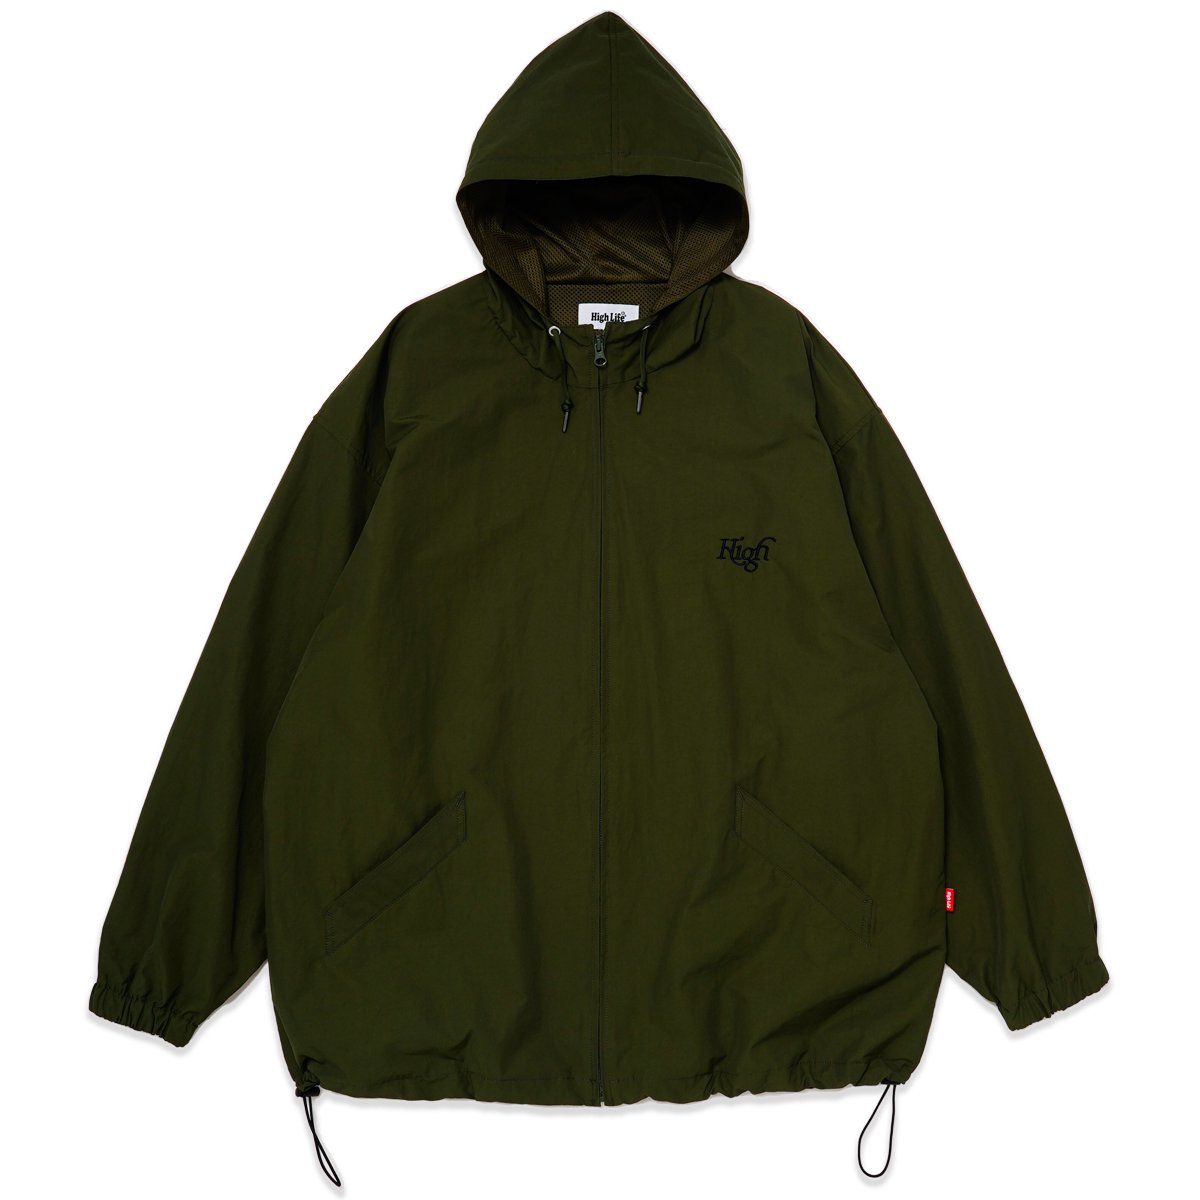 HighLife / Hooded Track Jacket - Olive - - HighLife Online Store